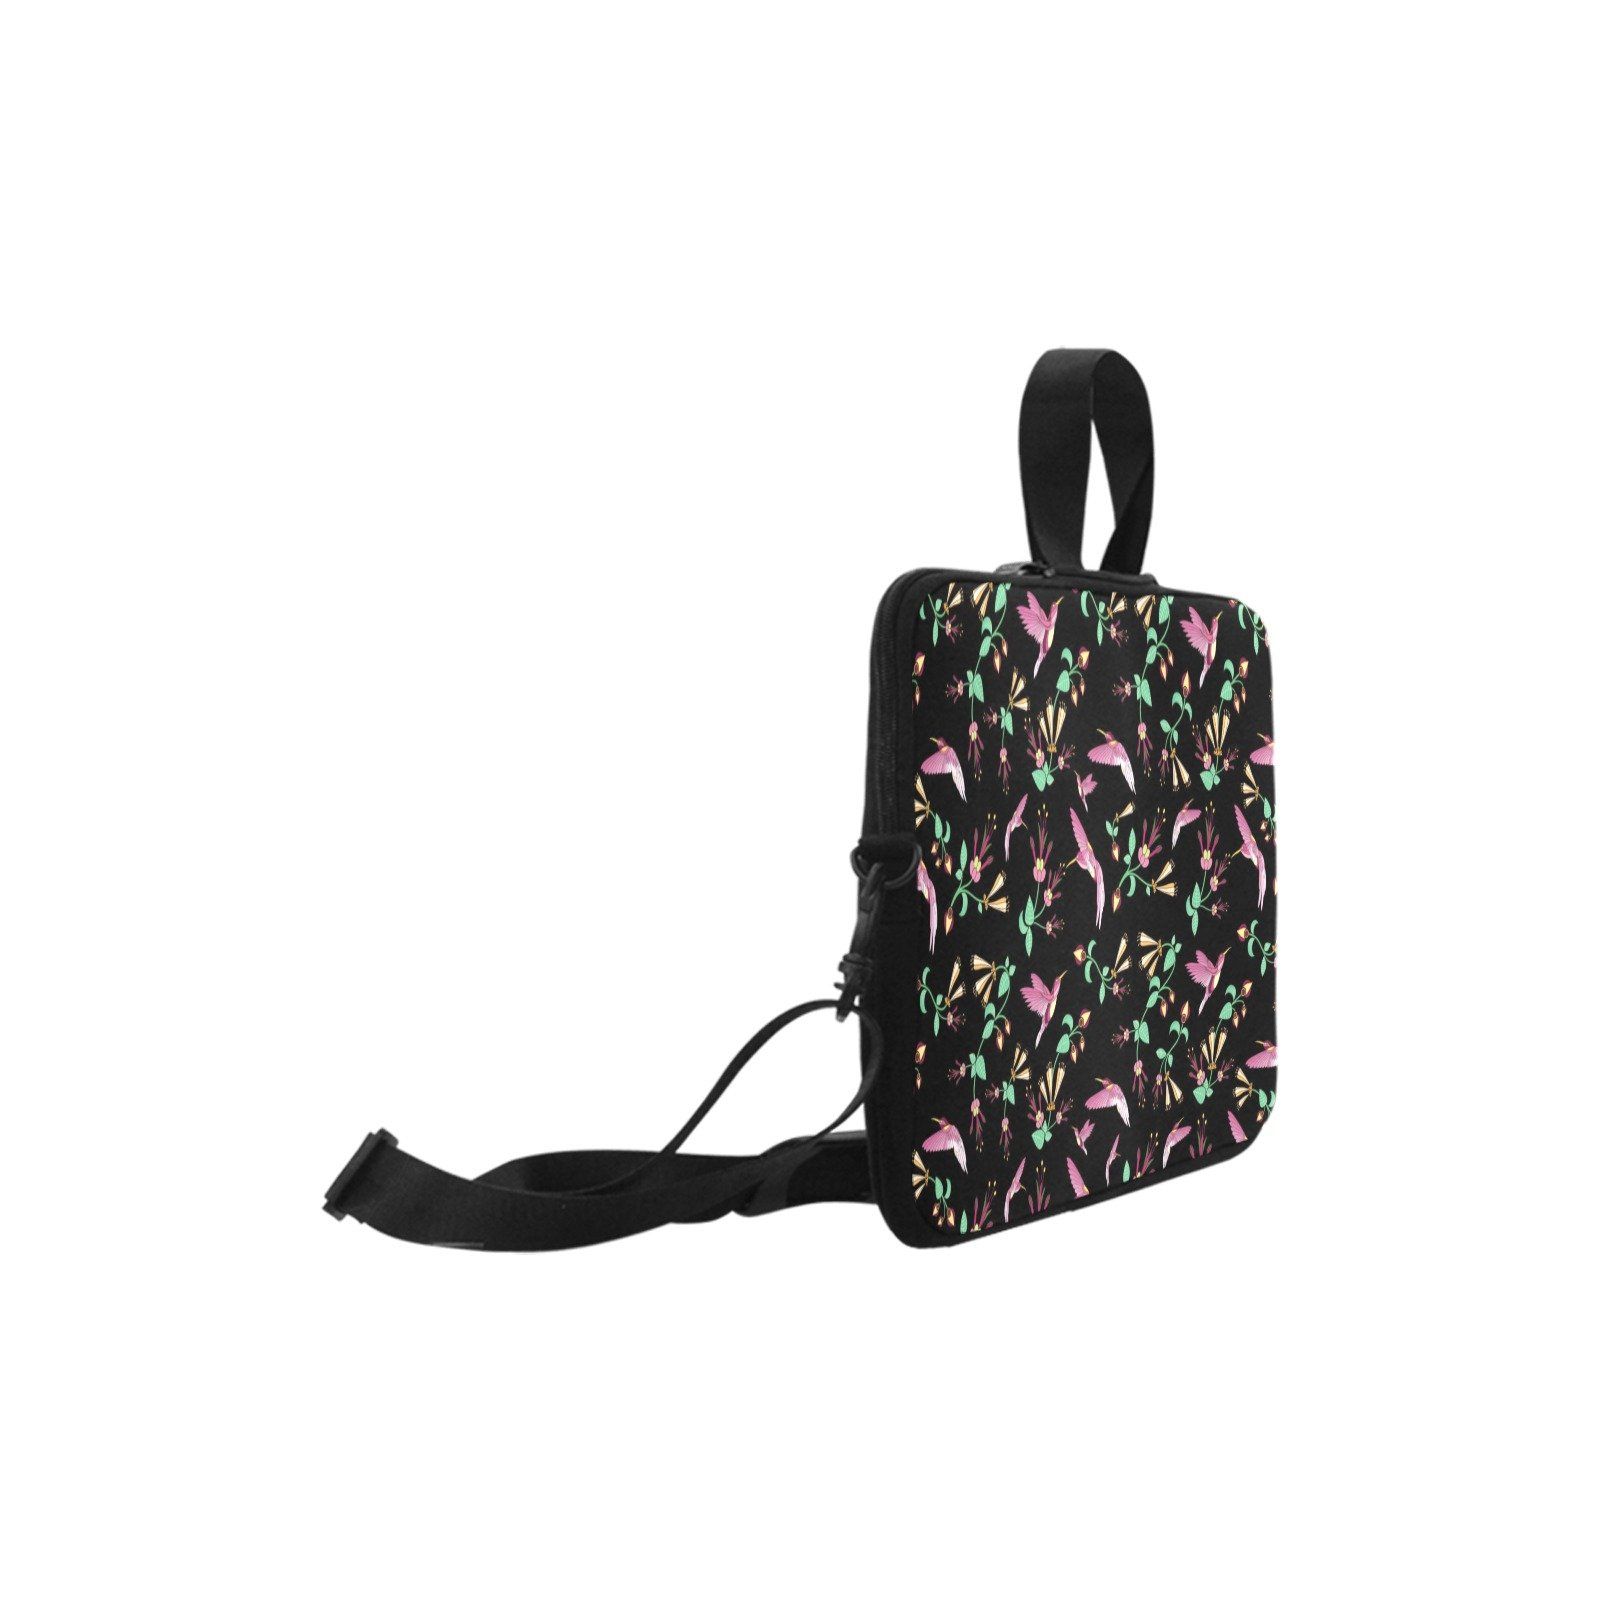 Swift Noir Laptop Handbags 17" bag e-joyer 